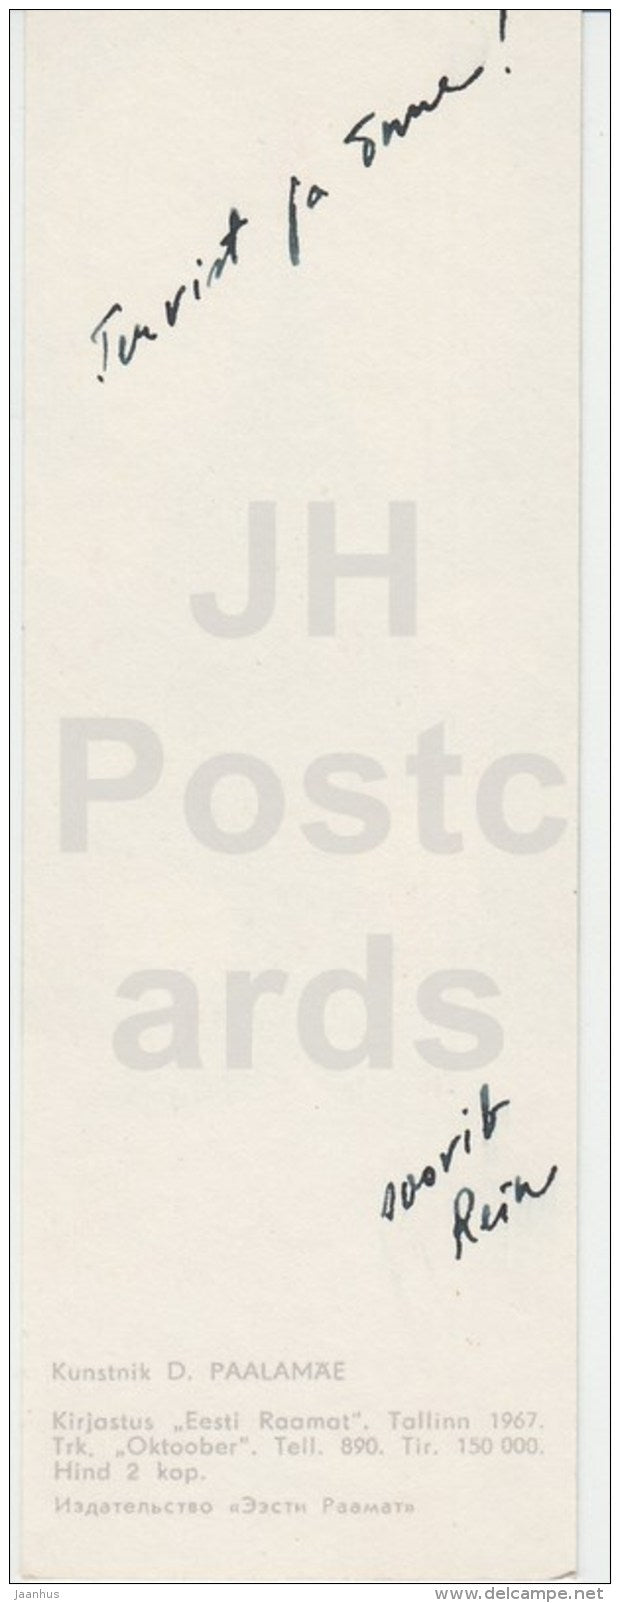 New Year Mini Greeting Card by D. Paalamäe - Fir Tree - 1967 - Estonia USSR - used - JH Postcards